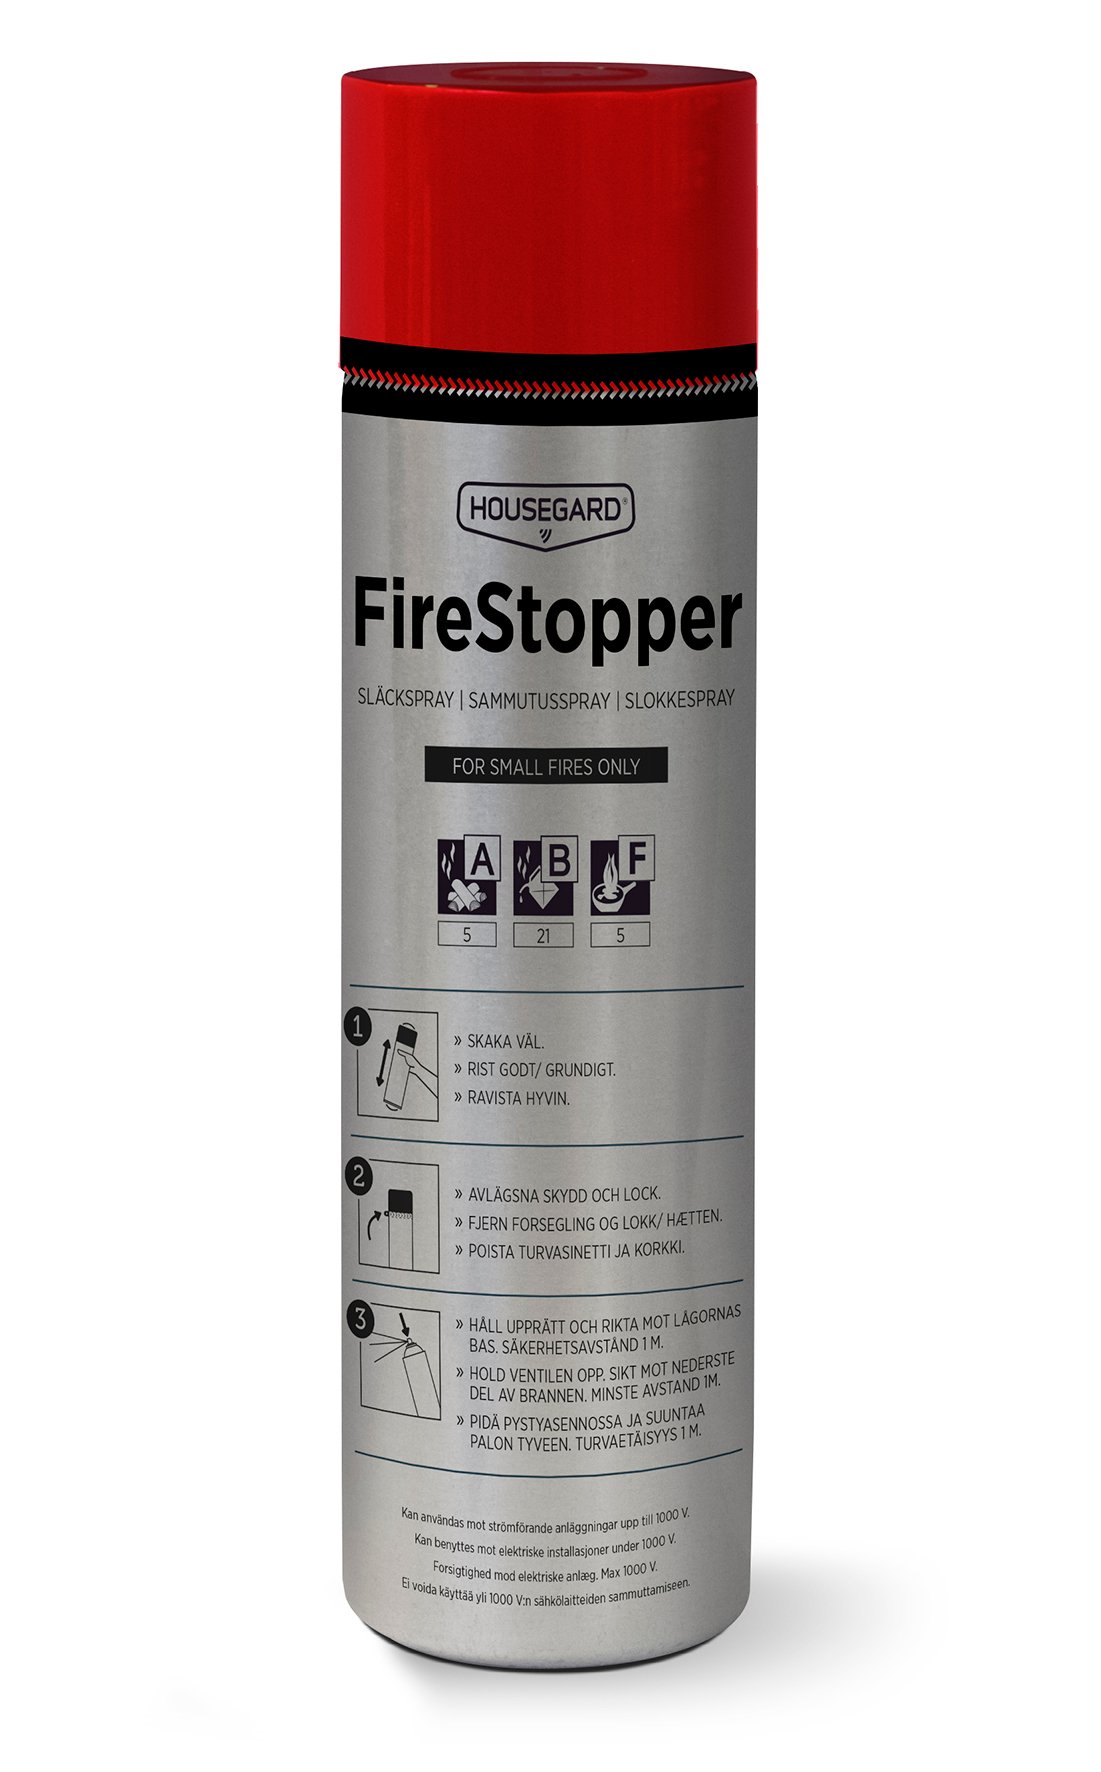 Släckspray Housegard Firestopper AD6-c 600ml